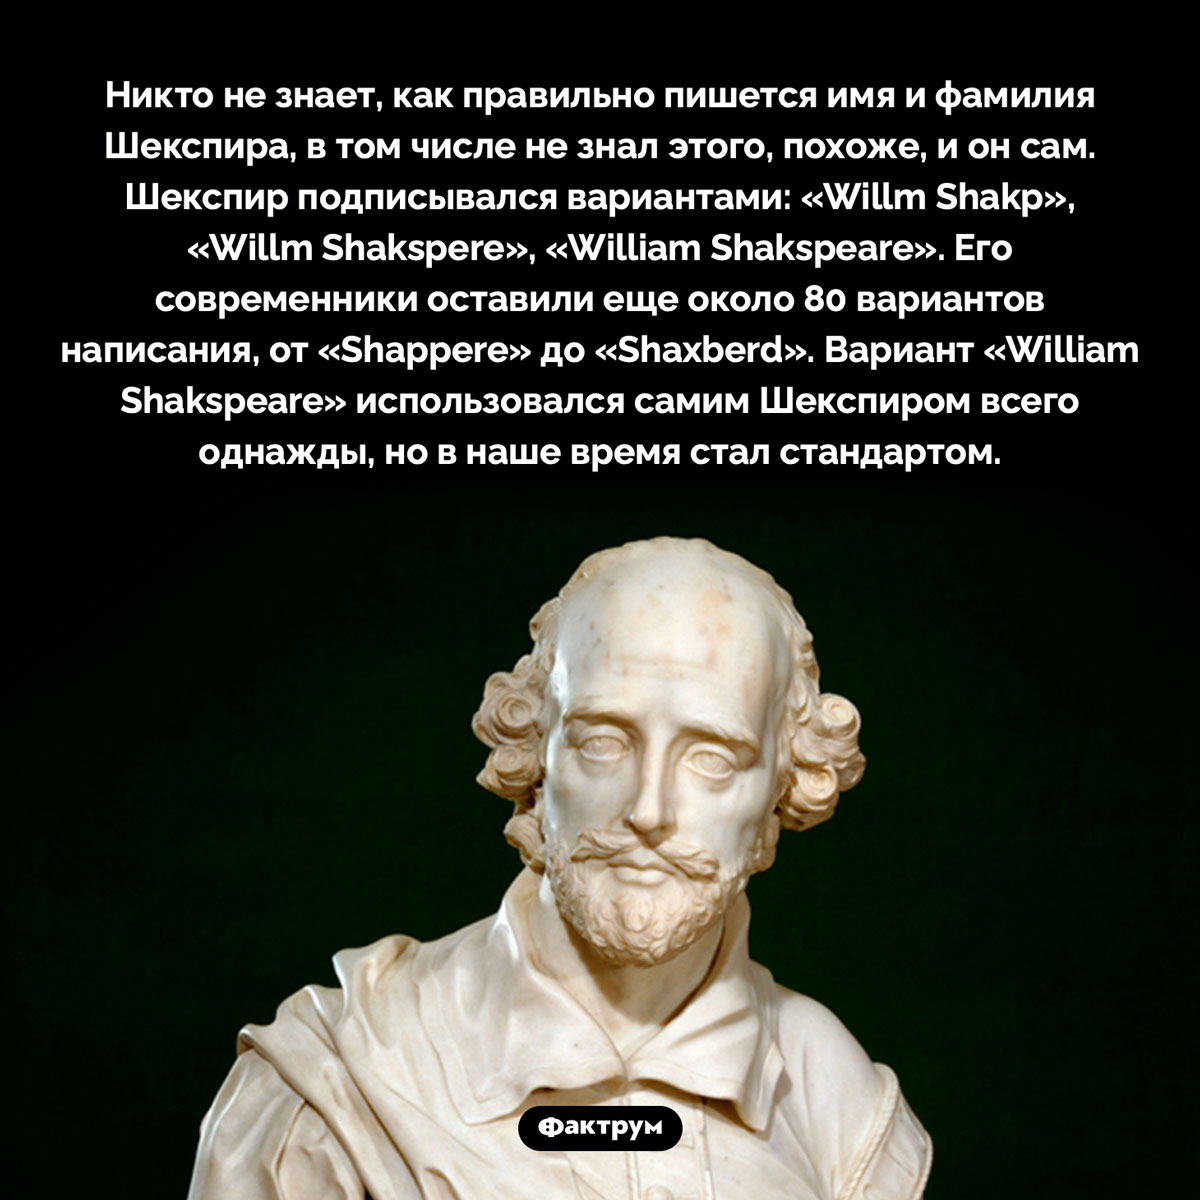 Как пишется имя Шекспира. Никто не знает, как правильно пишется имя и фамилия Шекспира, в том числе не знал этого, похоже, и он сам. Шекспир подписывался вариантами: «Willm Shakp», «Willm Shakspere», «William Shakspeare». Его современники оставили еще около 80 вариантов написания, от «Shappere» до «Shaxberd». Вариант «William Shakspeare» использовался самим Шекспиром всего однажды, но в наше время стал стандартом.